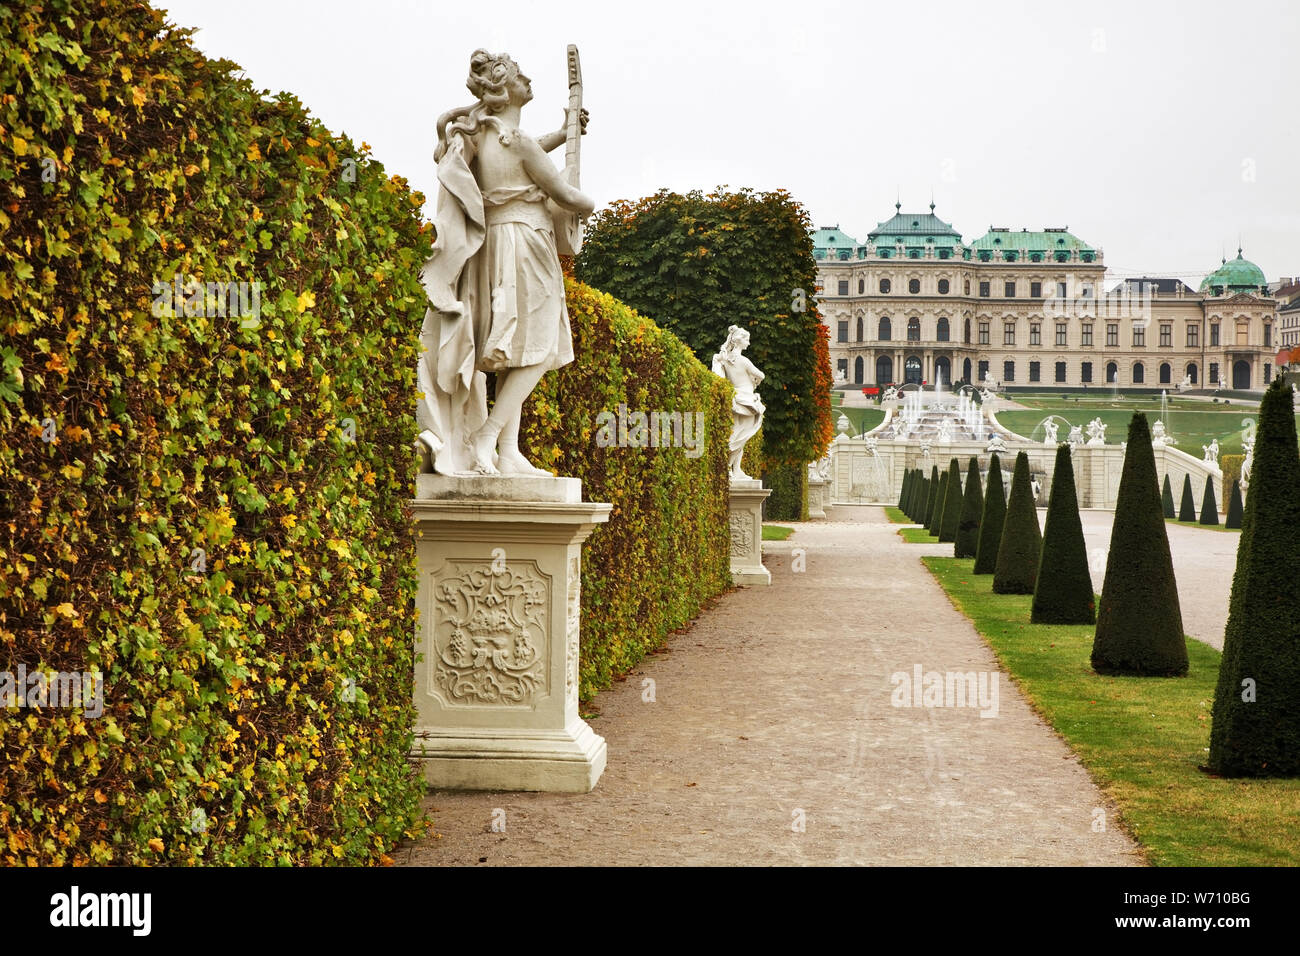 Das Schloss Belvedere in Wien. Österreich Stockfoto